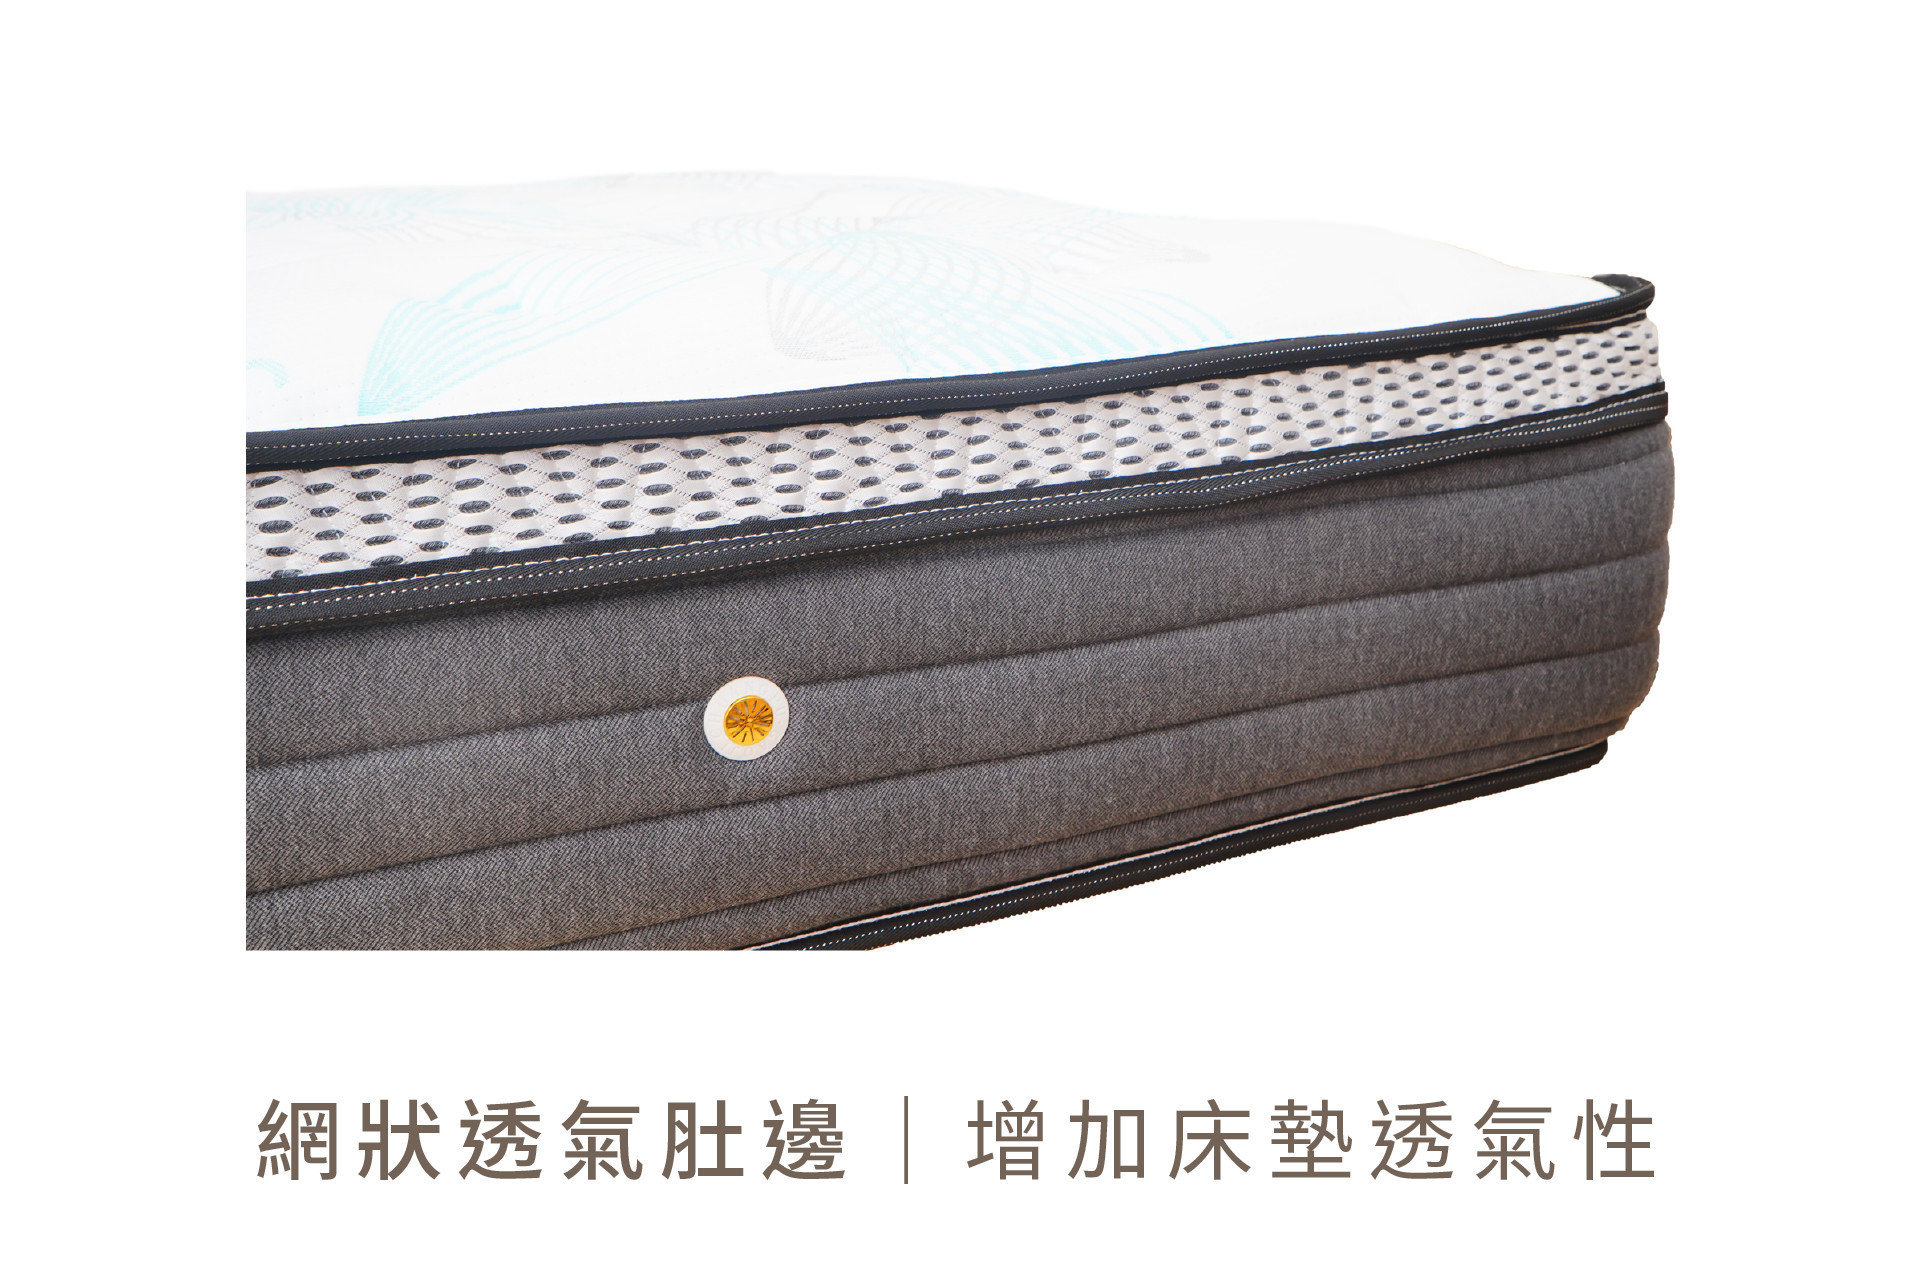 艾斯床墊床緣側邊加裝透氣布料，有效排出人體散發的熱氣